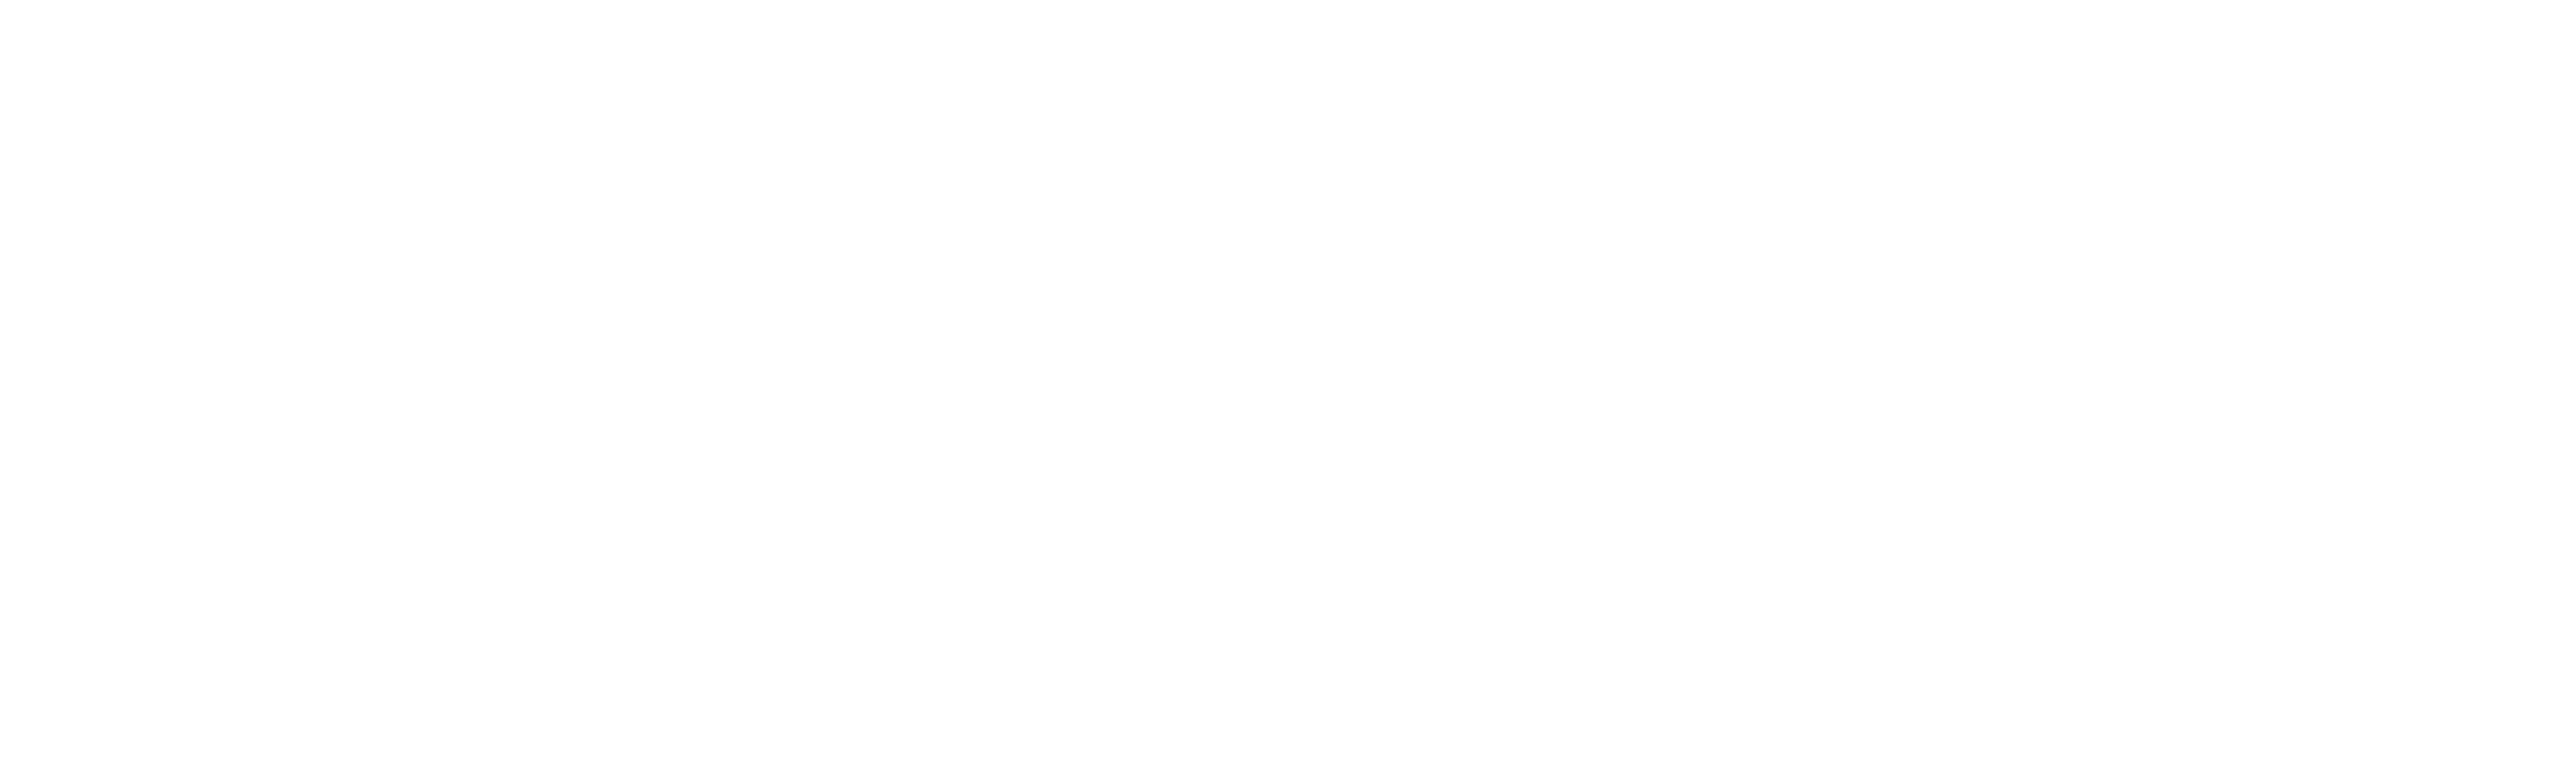 mendix certified partner